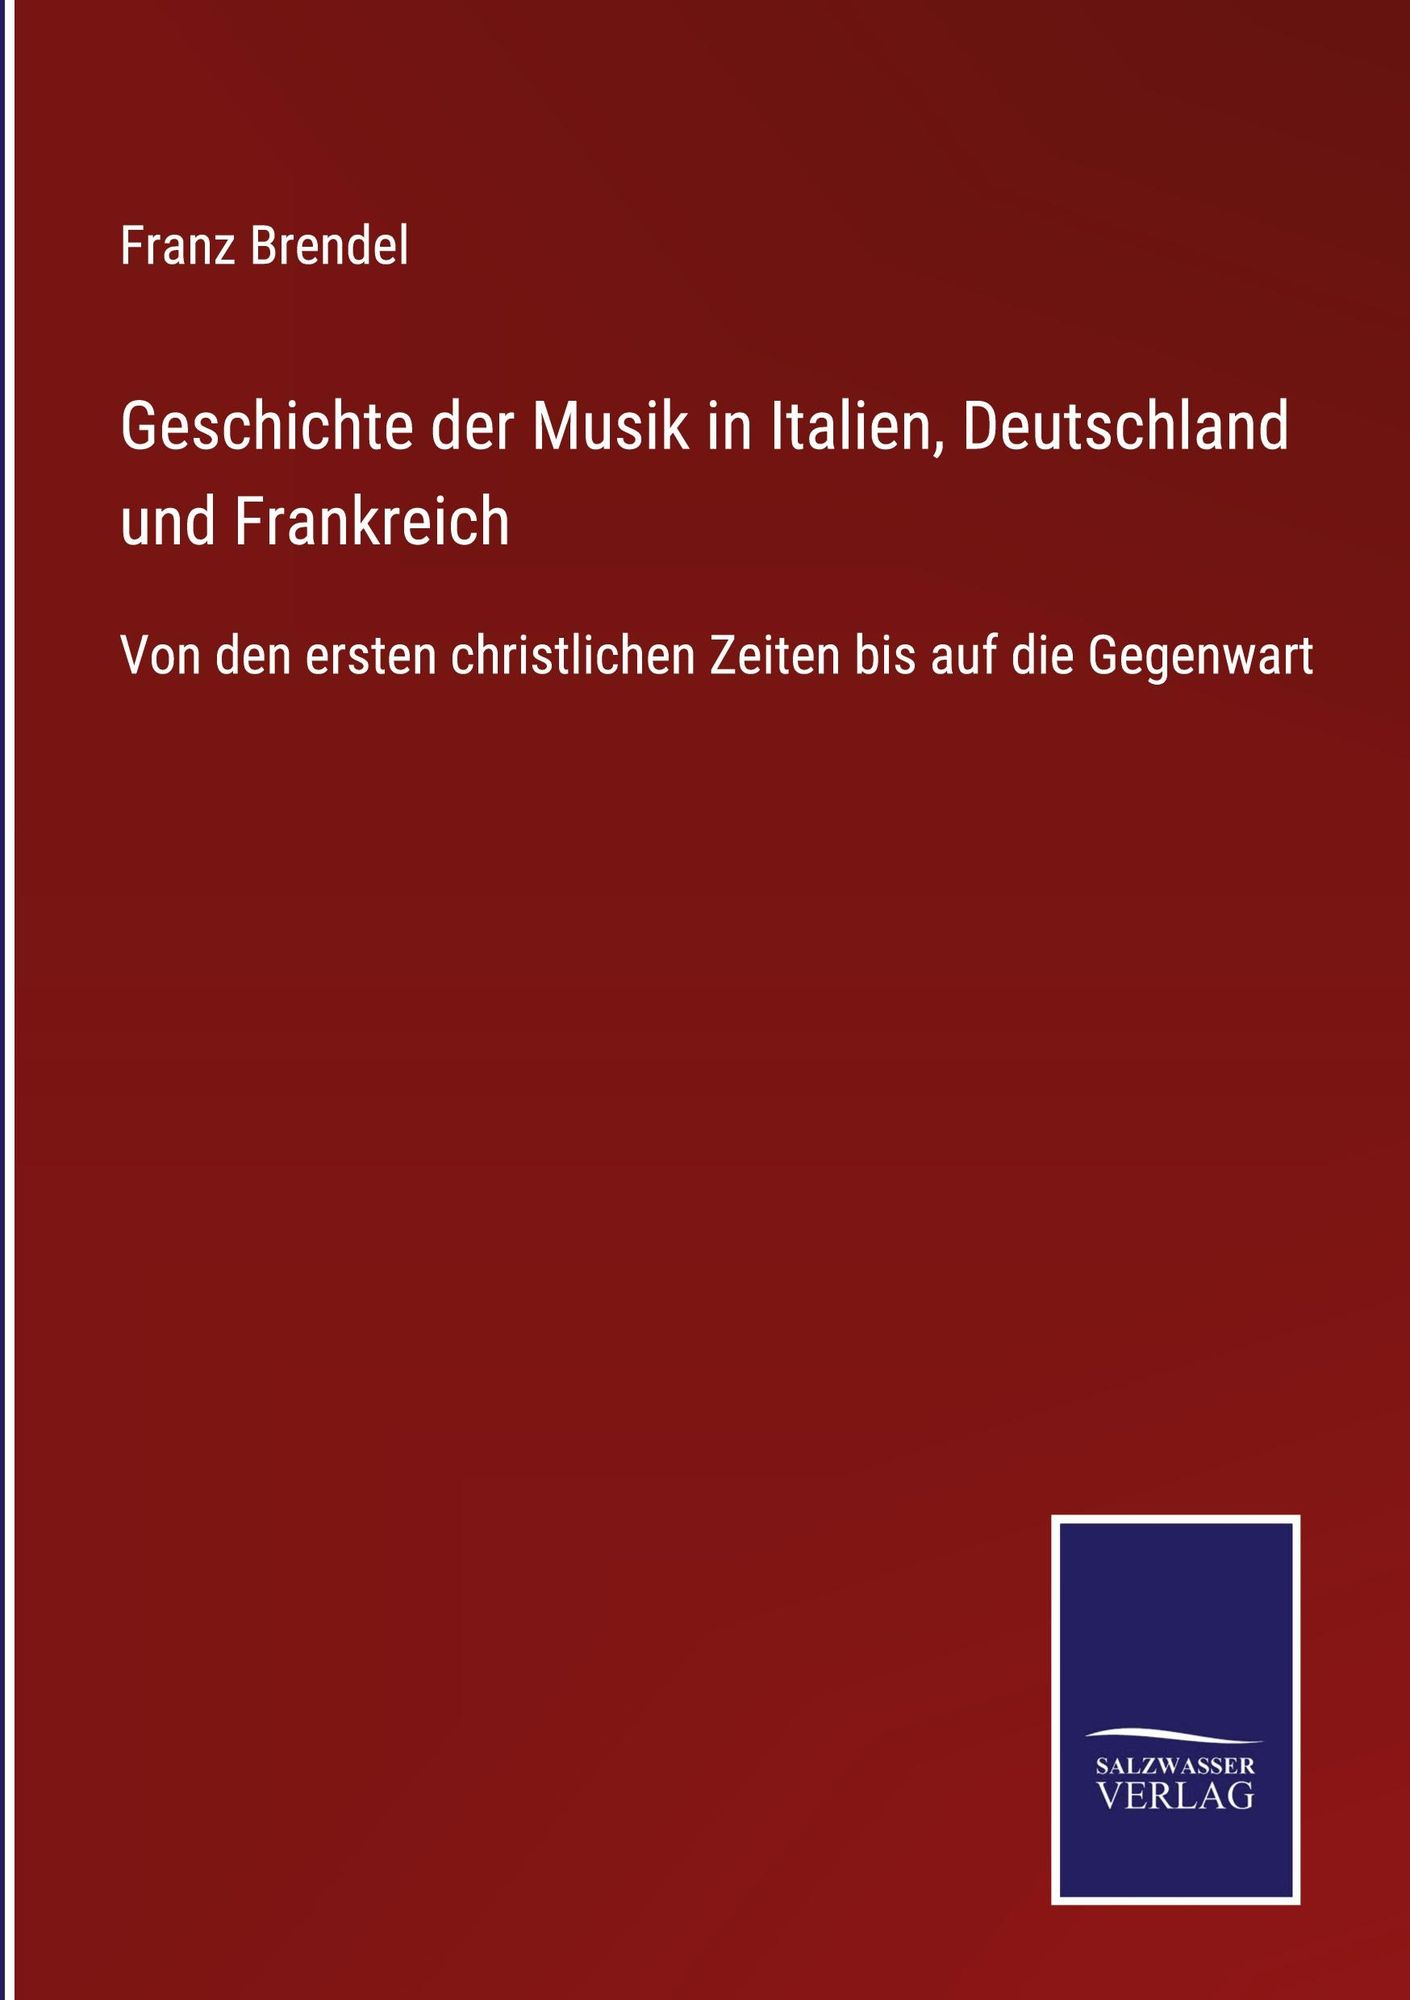 Geschichte Der Musik In Italien Deutschland Und Frankreich Von Franz Brendel Buch 978 7451